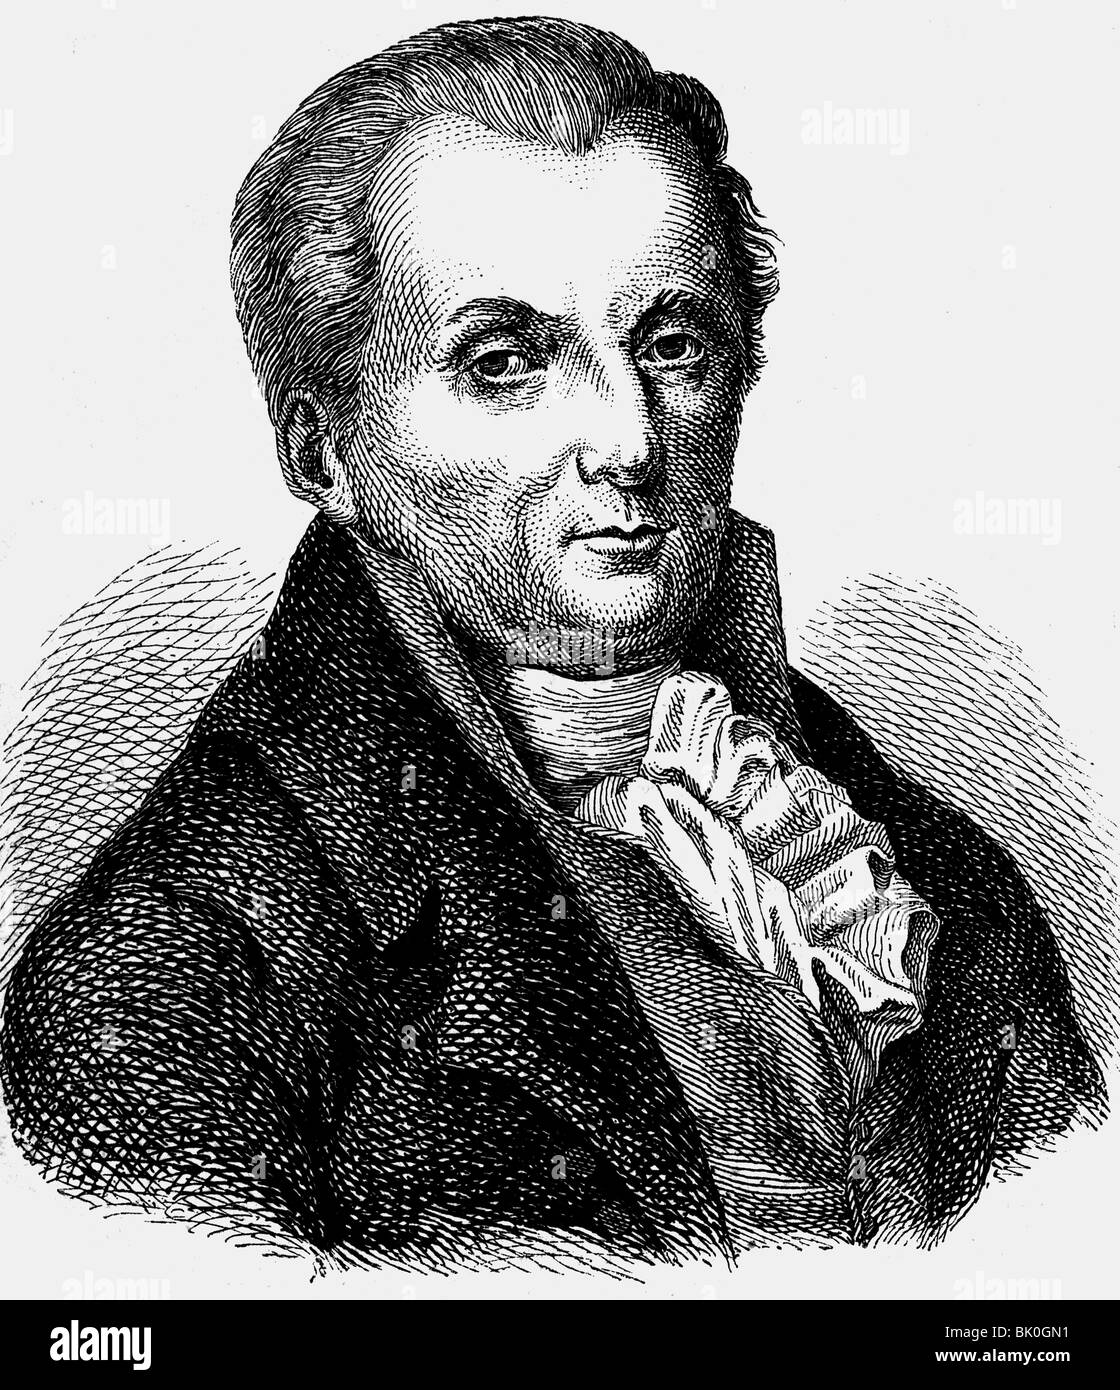 Thuemmel, Moritz August von, 27.5.1738 - 26.10.1817, autor / escritor alemán, retrato, grabado en madera, siglo 19, Foto de stock